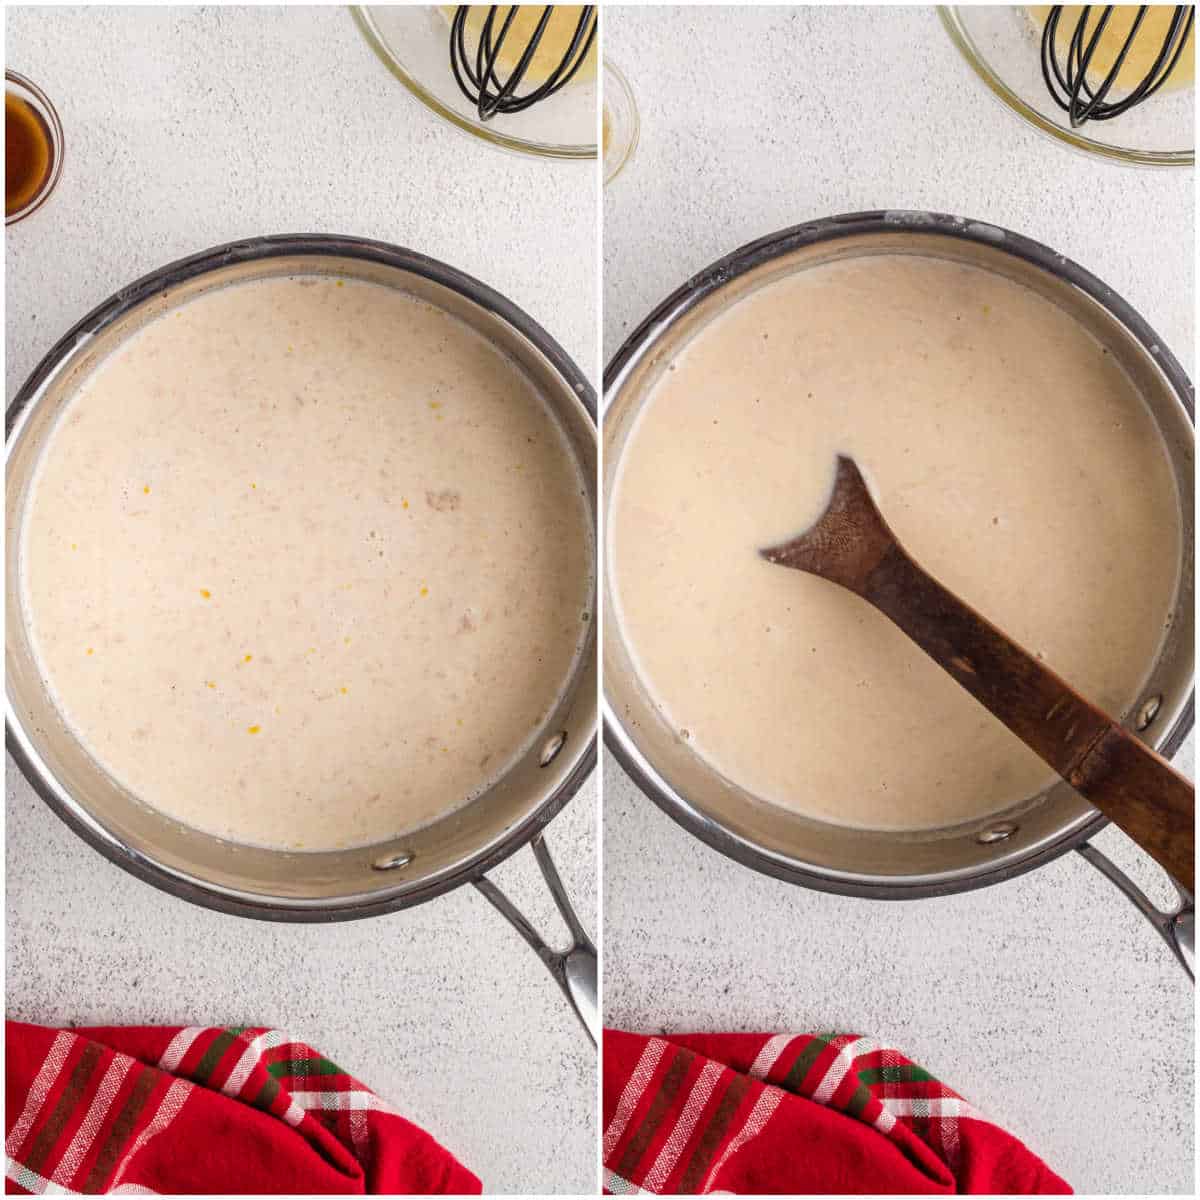 How to make homemade eggnog